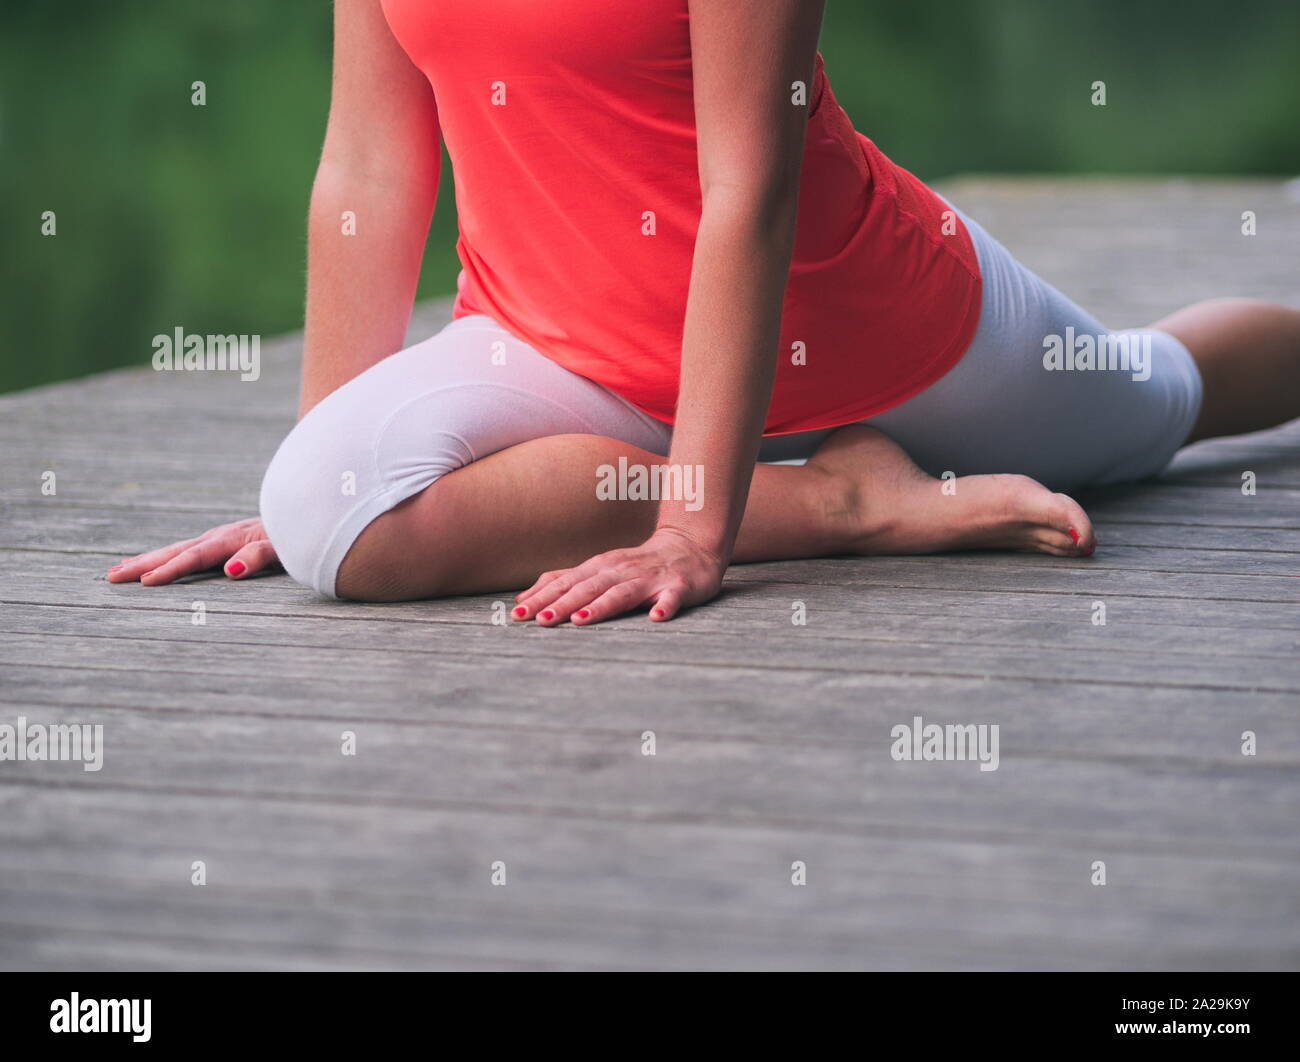 Frau in den 30er Jahren Yoga im Park auf einem Pier Stockfoto